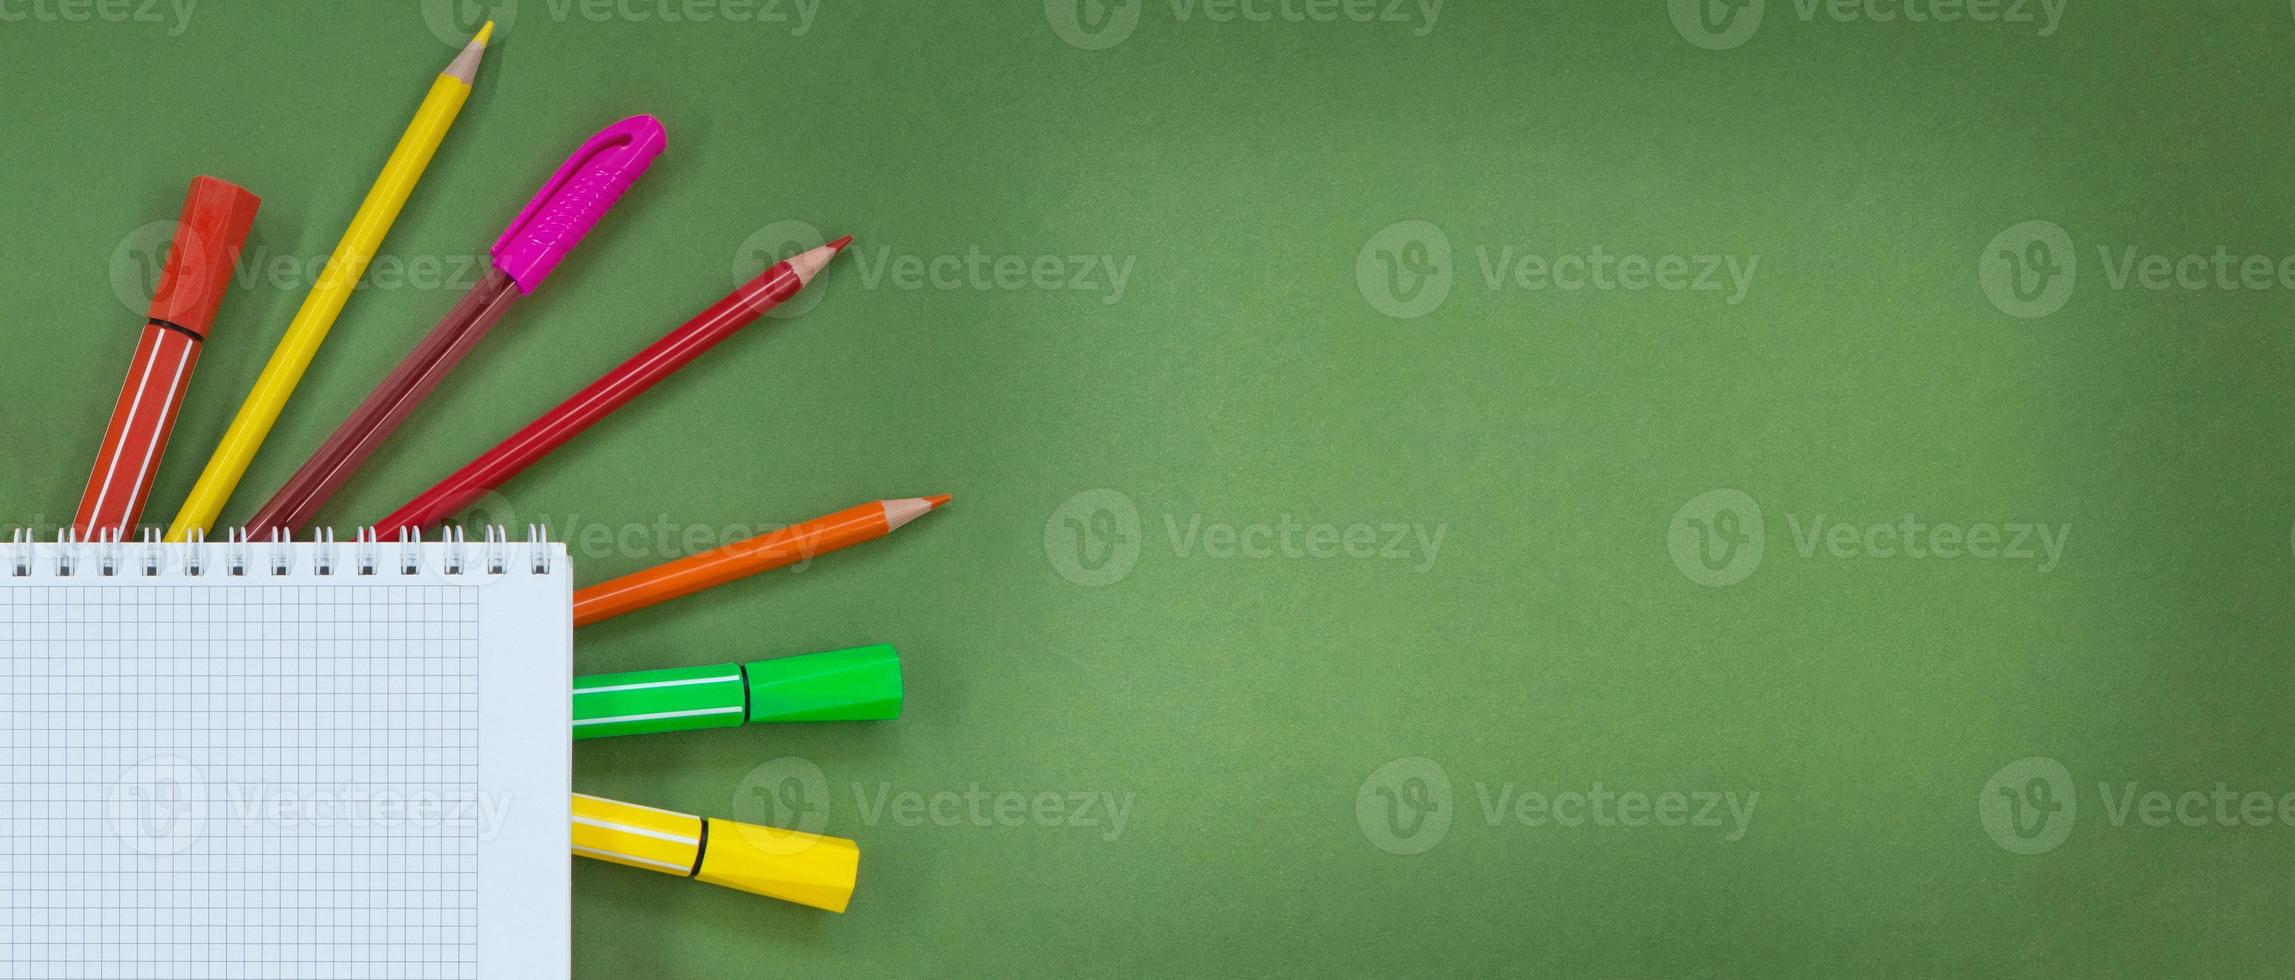 stylos multicolores, crayons, feutres avec bloc-notes avec cellule sur le  côté sur fond vert. concept retour à l'école, apprentissage, dessin. copie  espace 13262431 Photo de stock chez Vecteezy